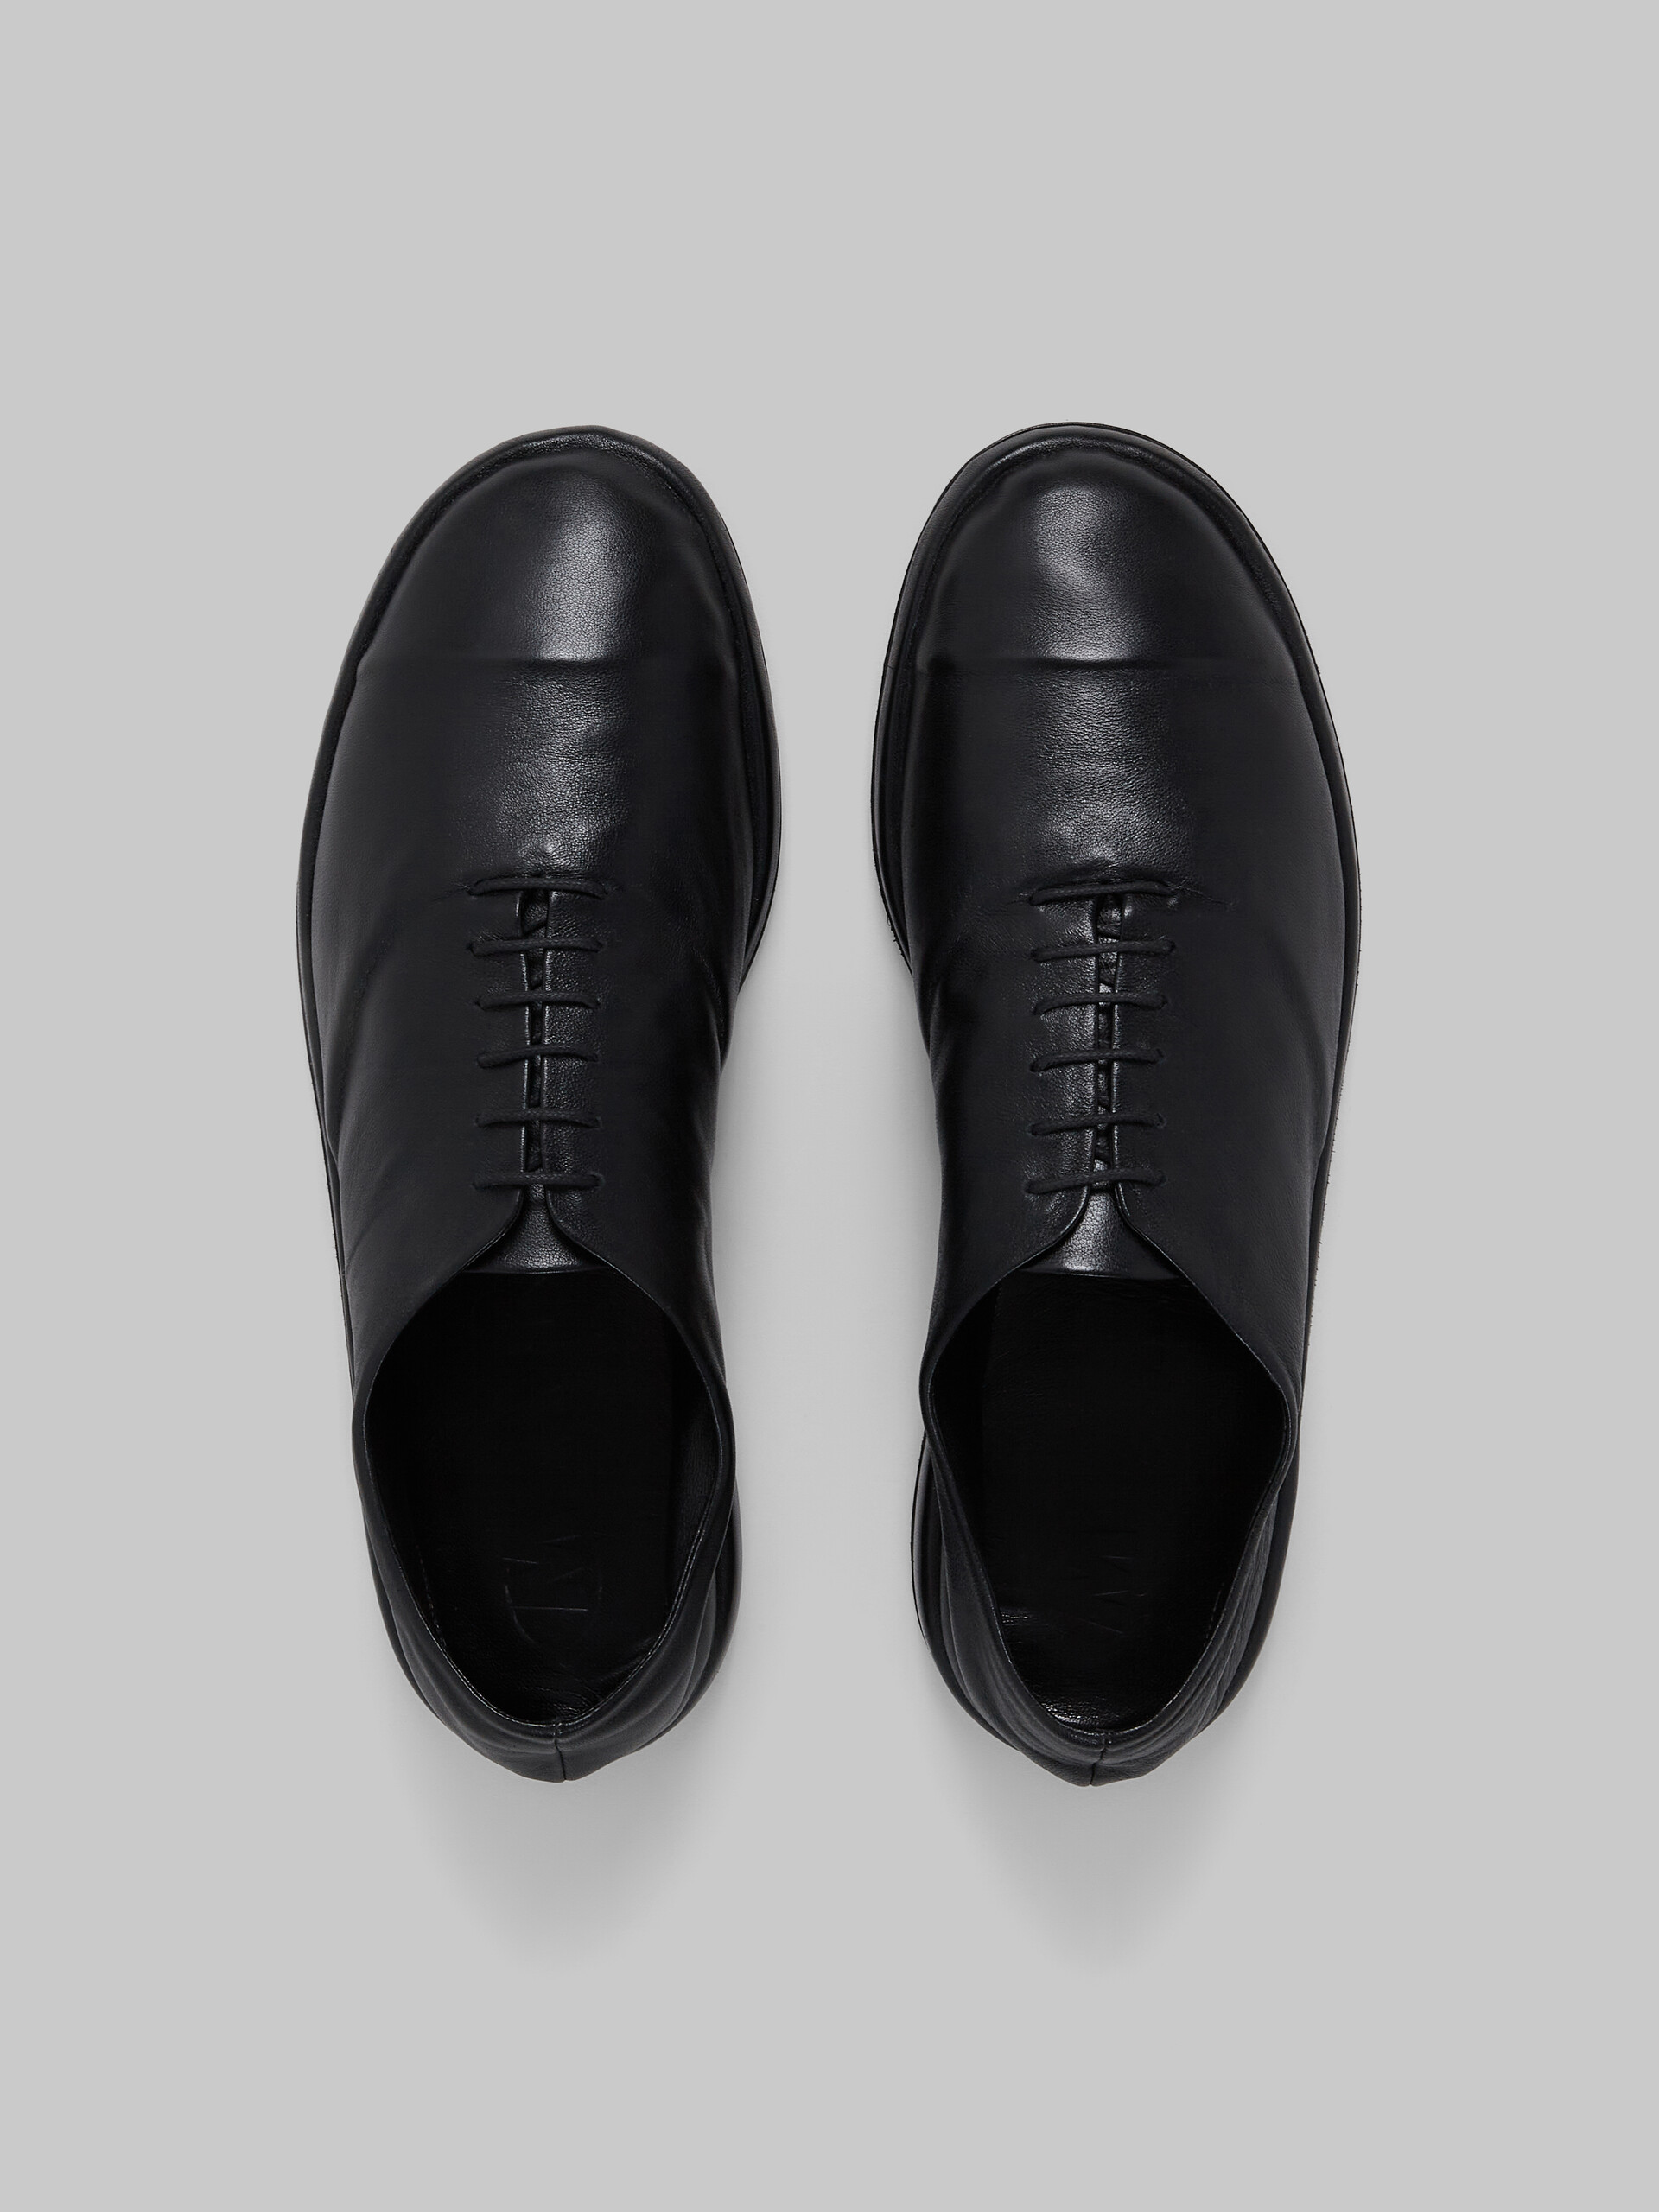 Zapatillas sin costuras de piel de napa gris - Zapatos con cordones - Image 4